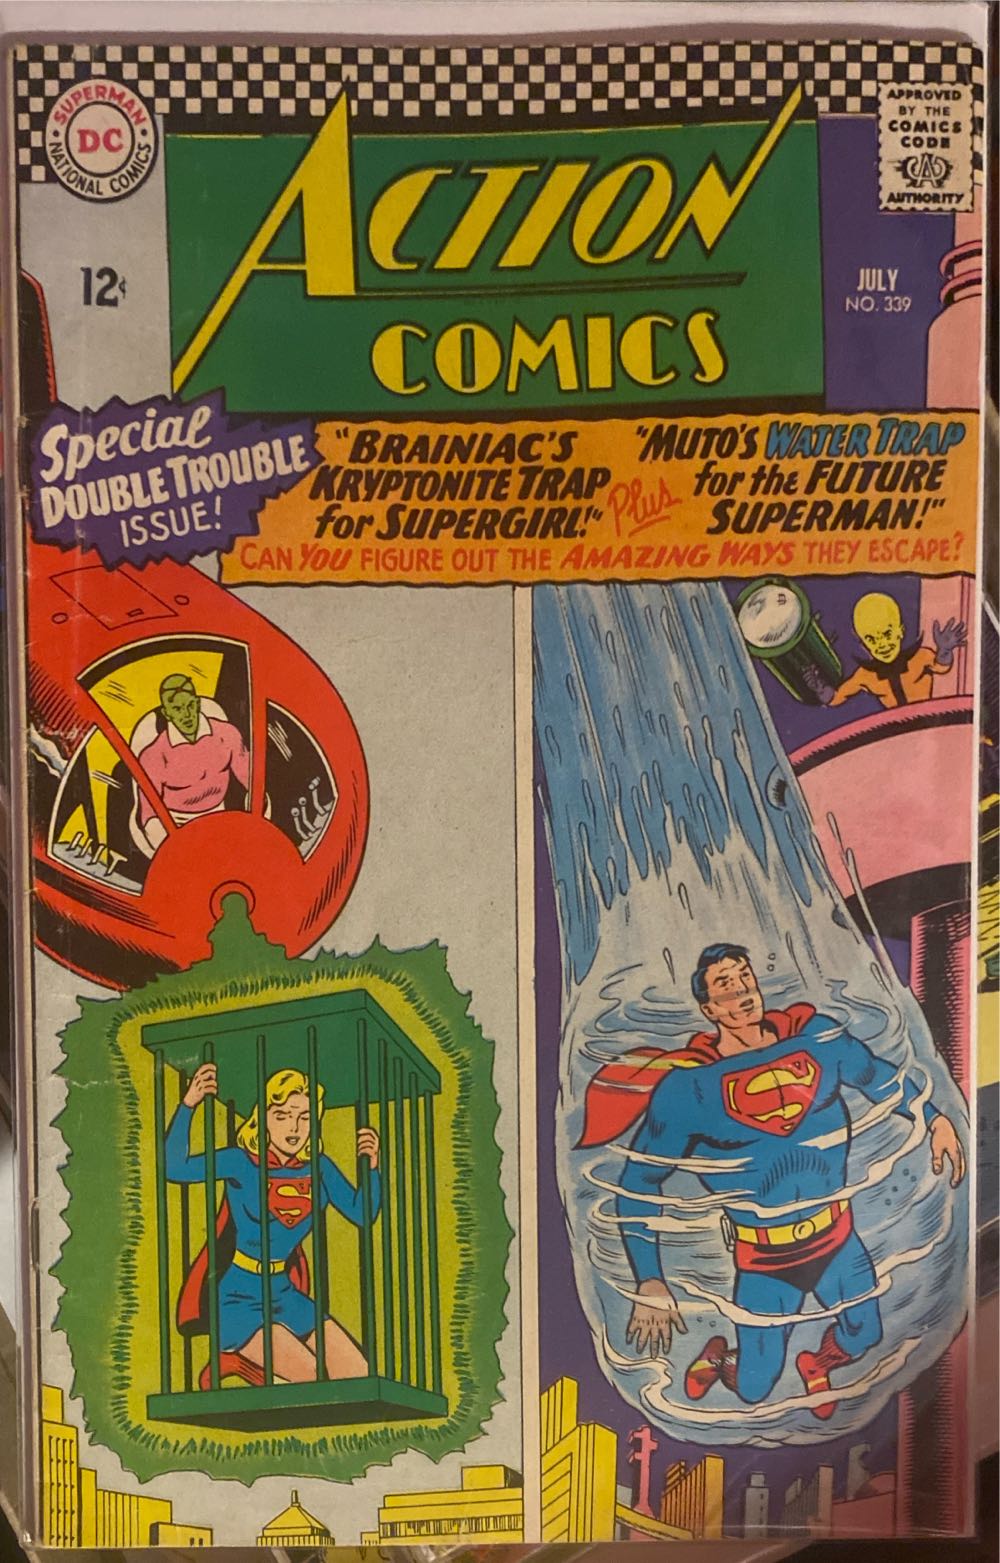 Action Comics - DC Comics (339 - Jul 1966) comic book collectible - Main Image 2